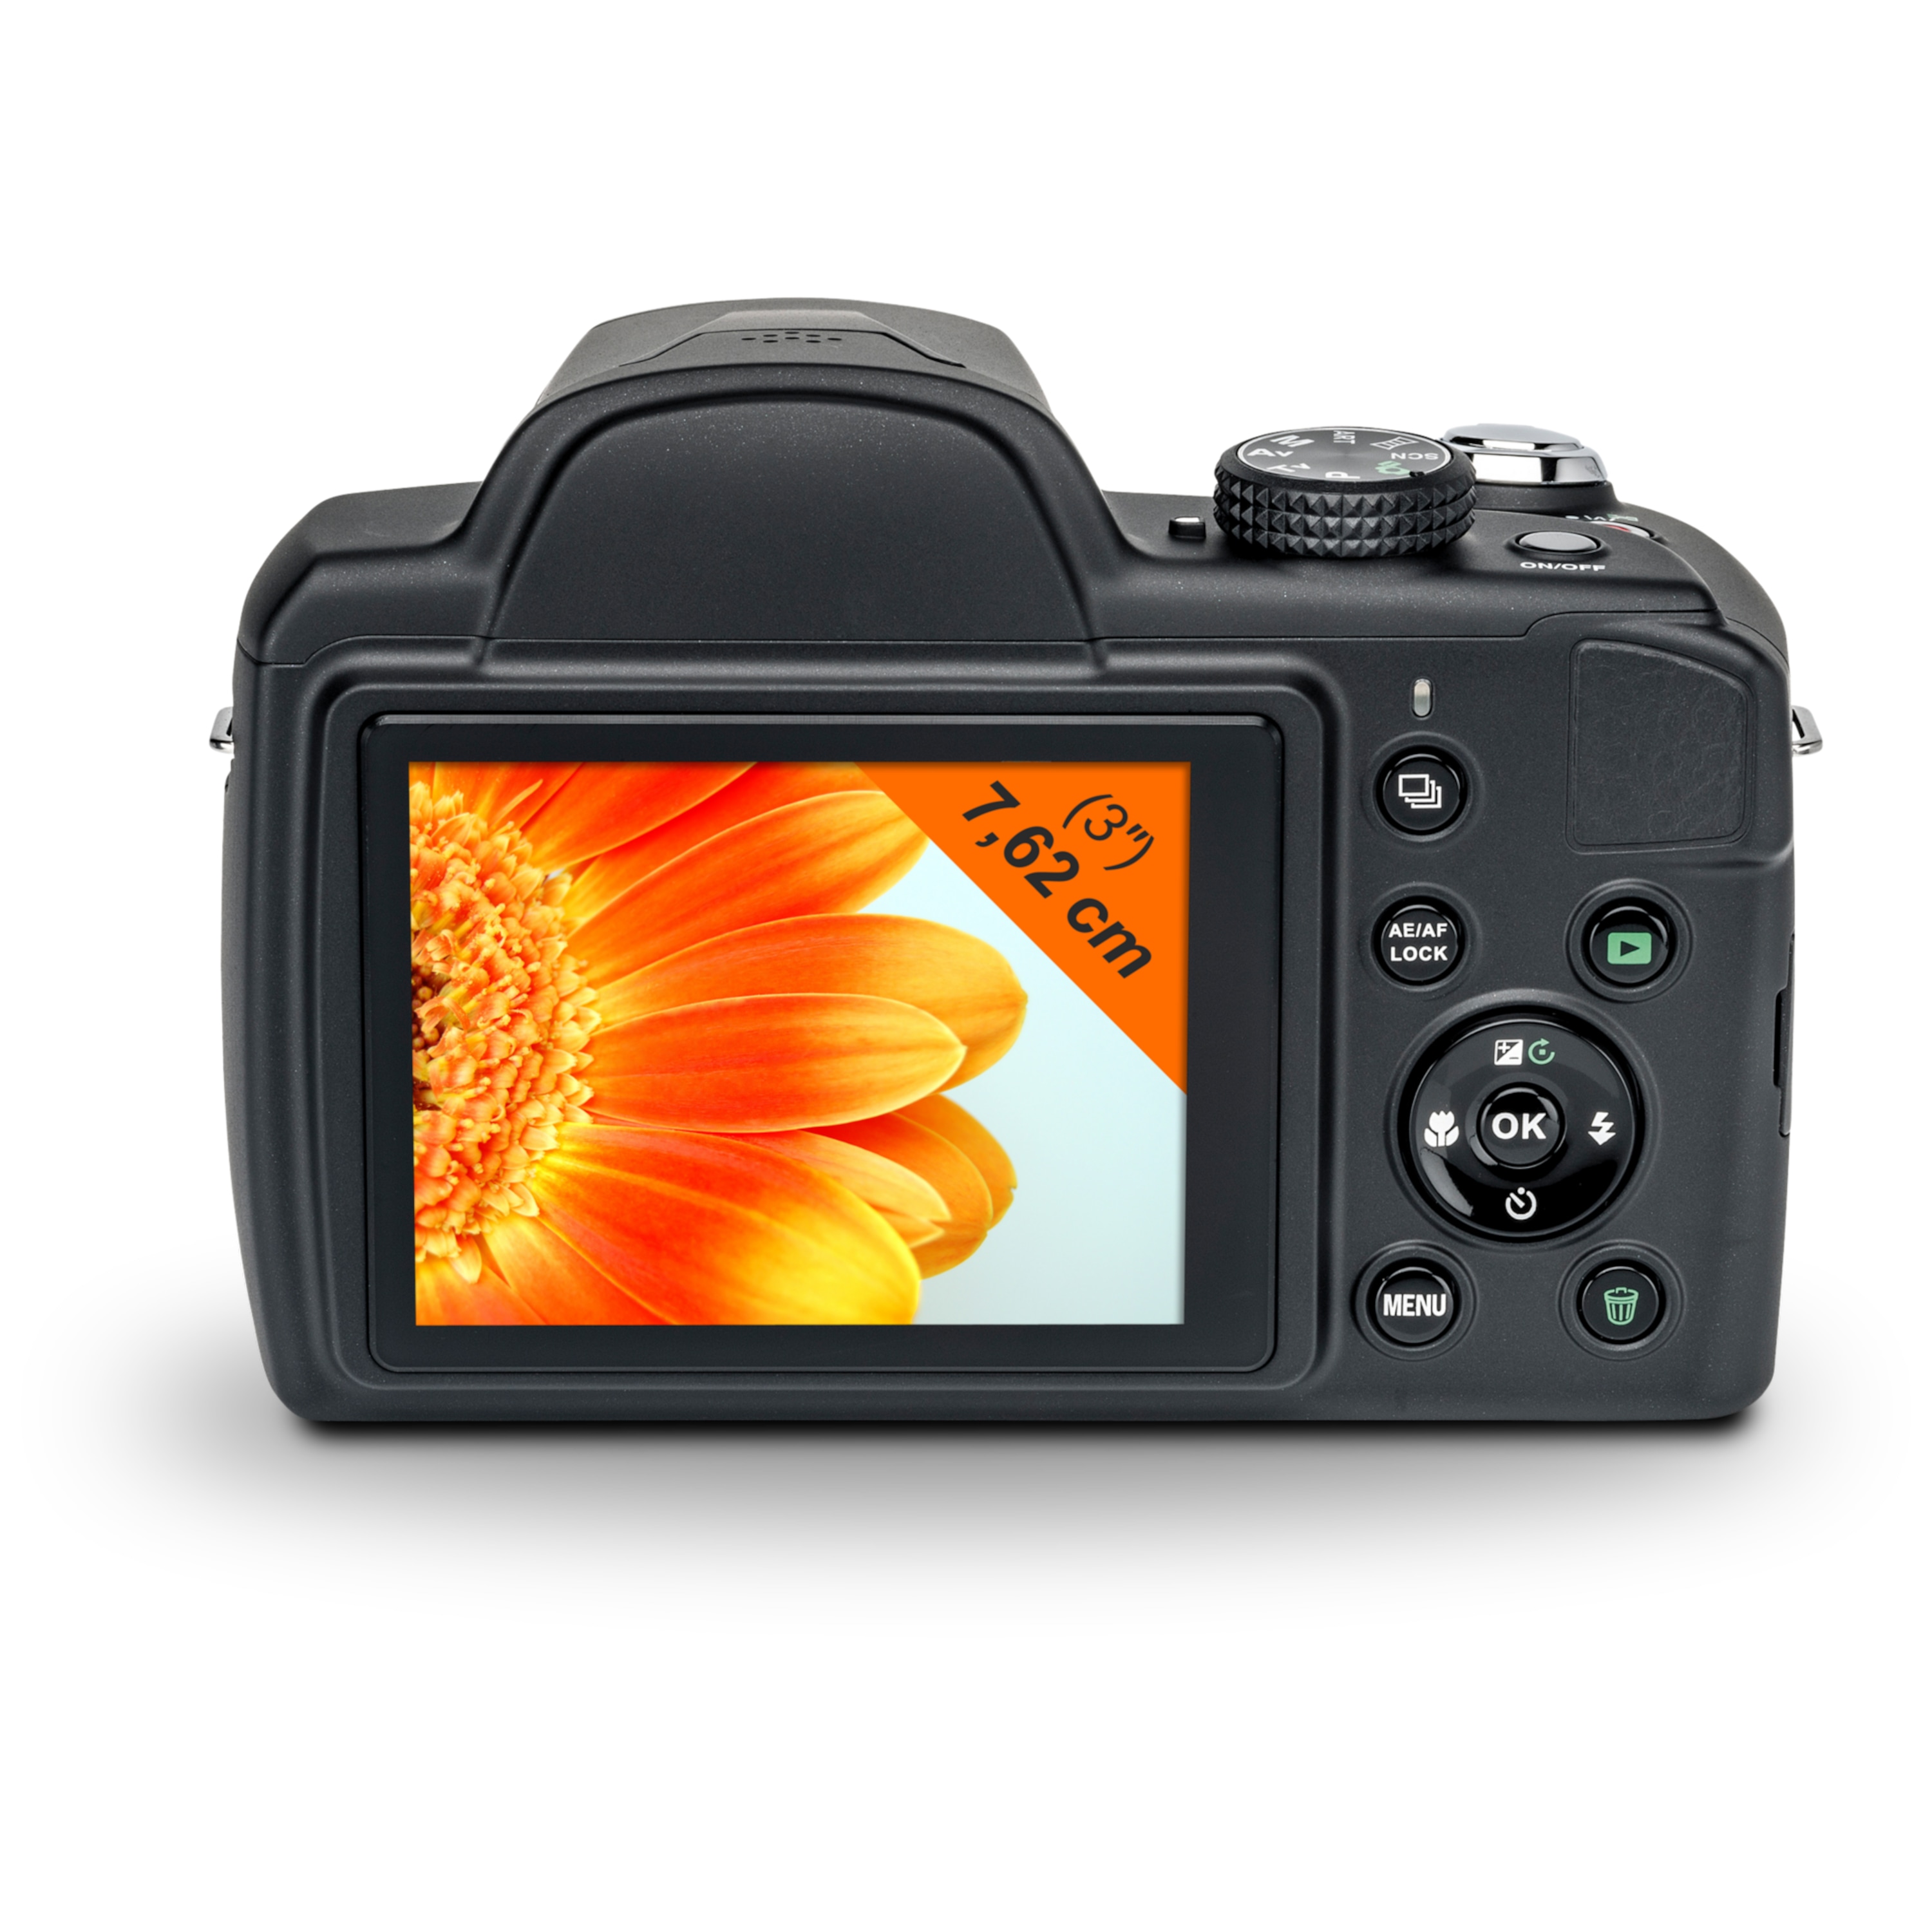 MEDION® LIFE® P44029 Digitalkamera, 20 MP, 7,62 cm (3") LC-Display, 35-fach optischer Zoom, 8-fach digitaler Zoom, HD Videoauflösung, Gesichtserkennung